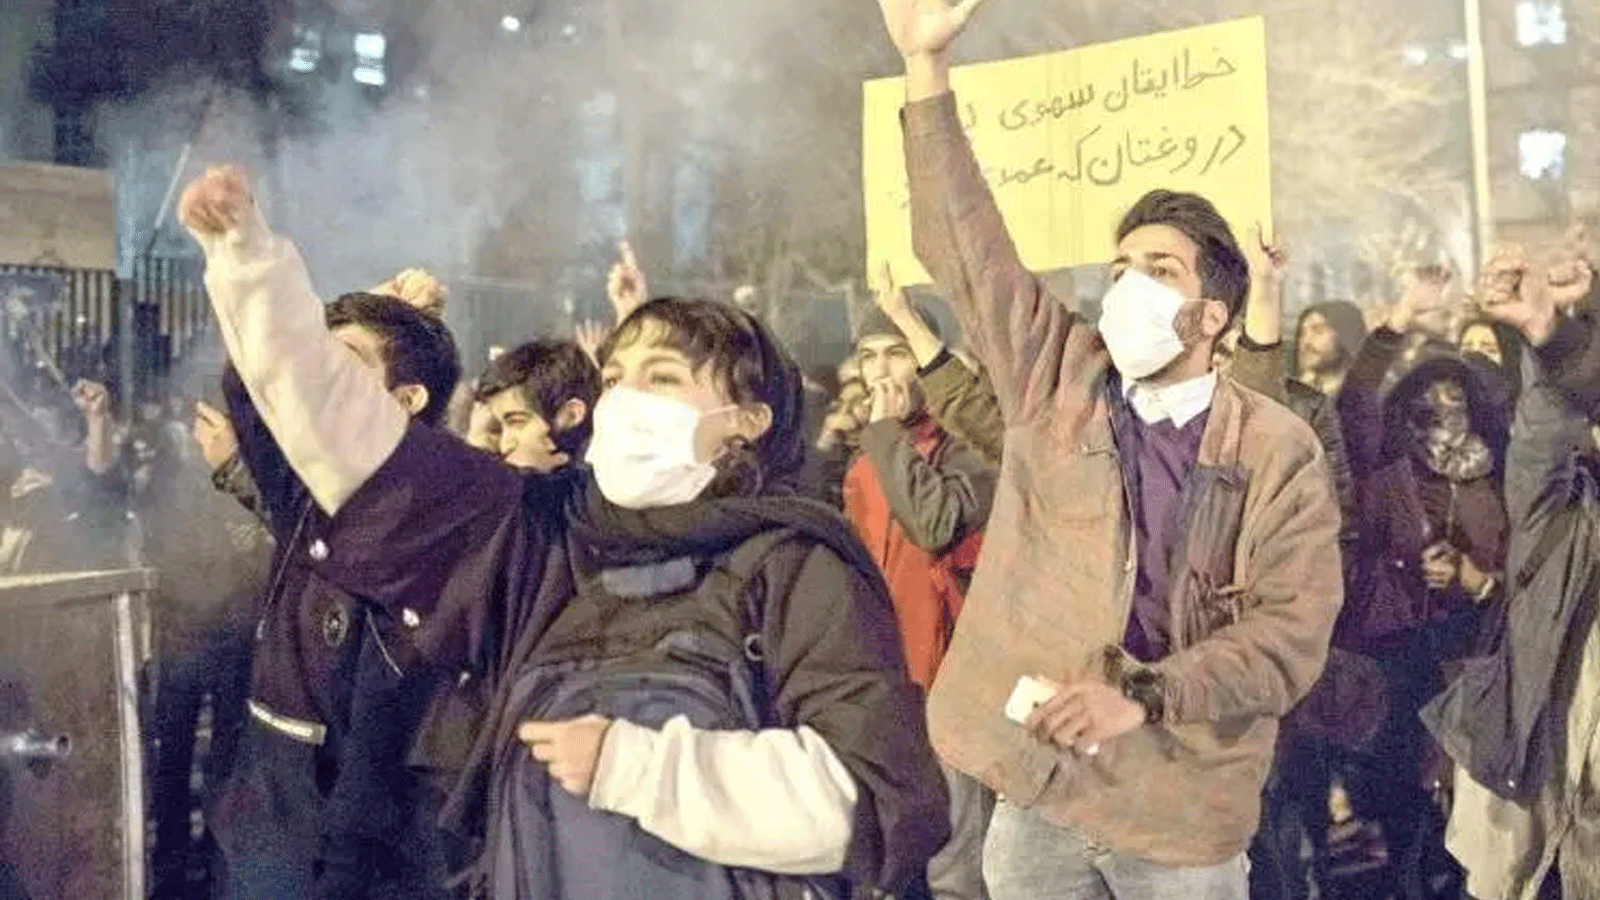 احتجاج طلابي في جامعة أمير كبير بطهران